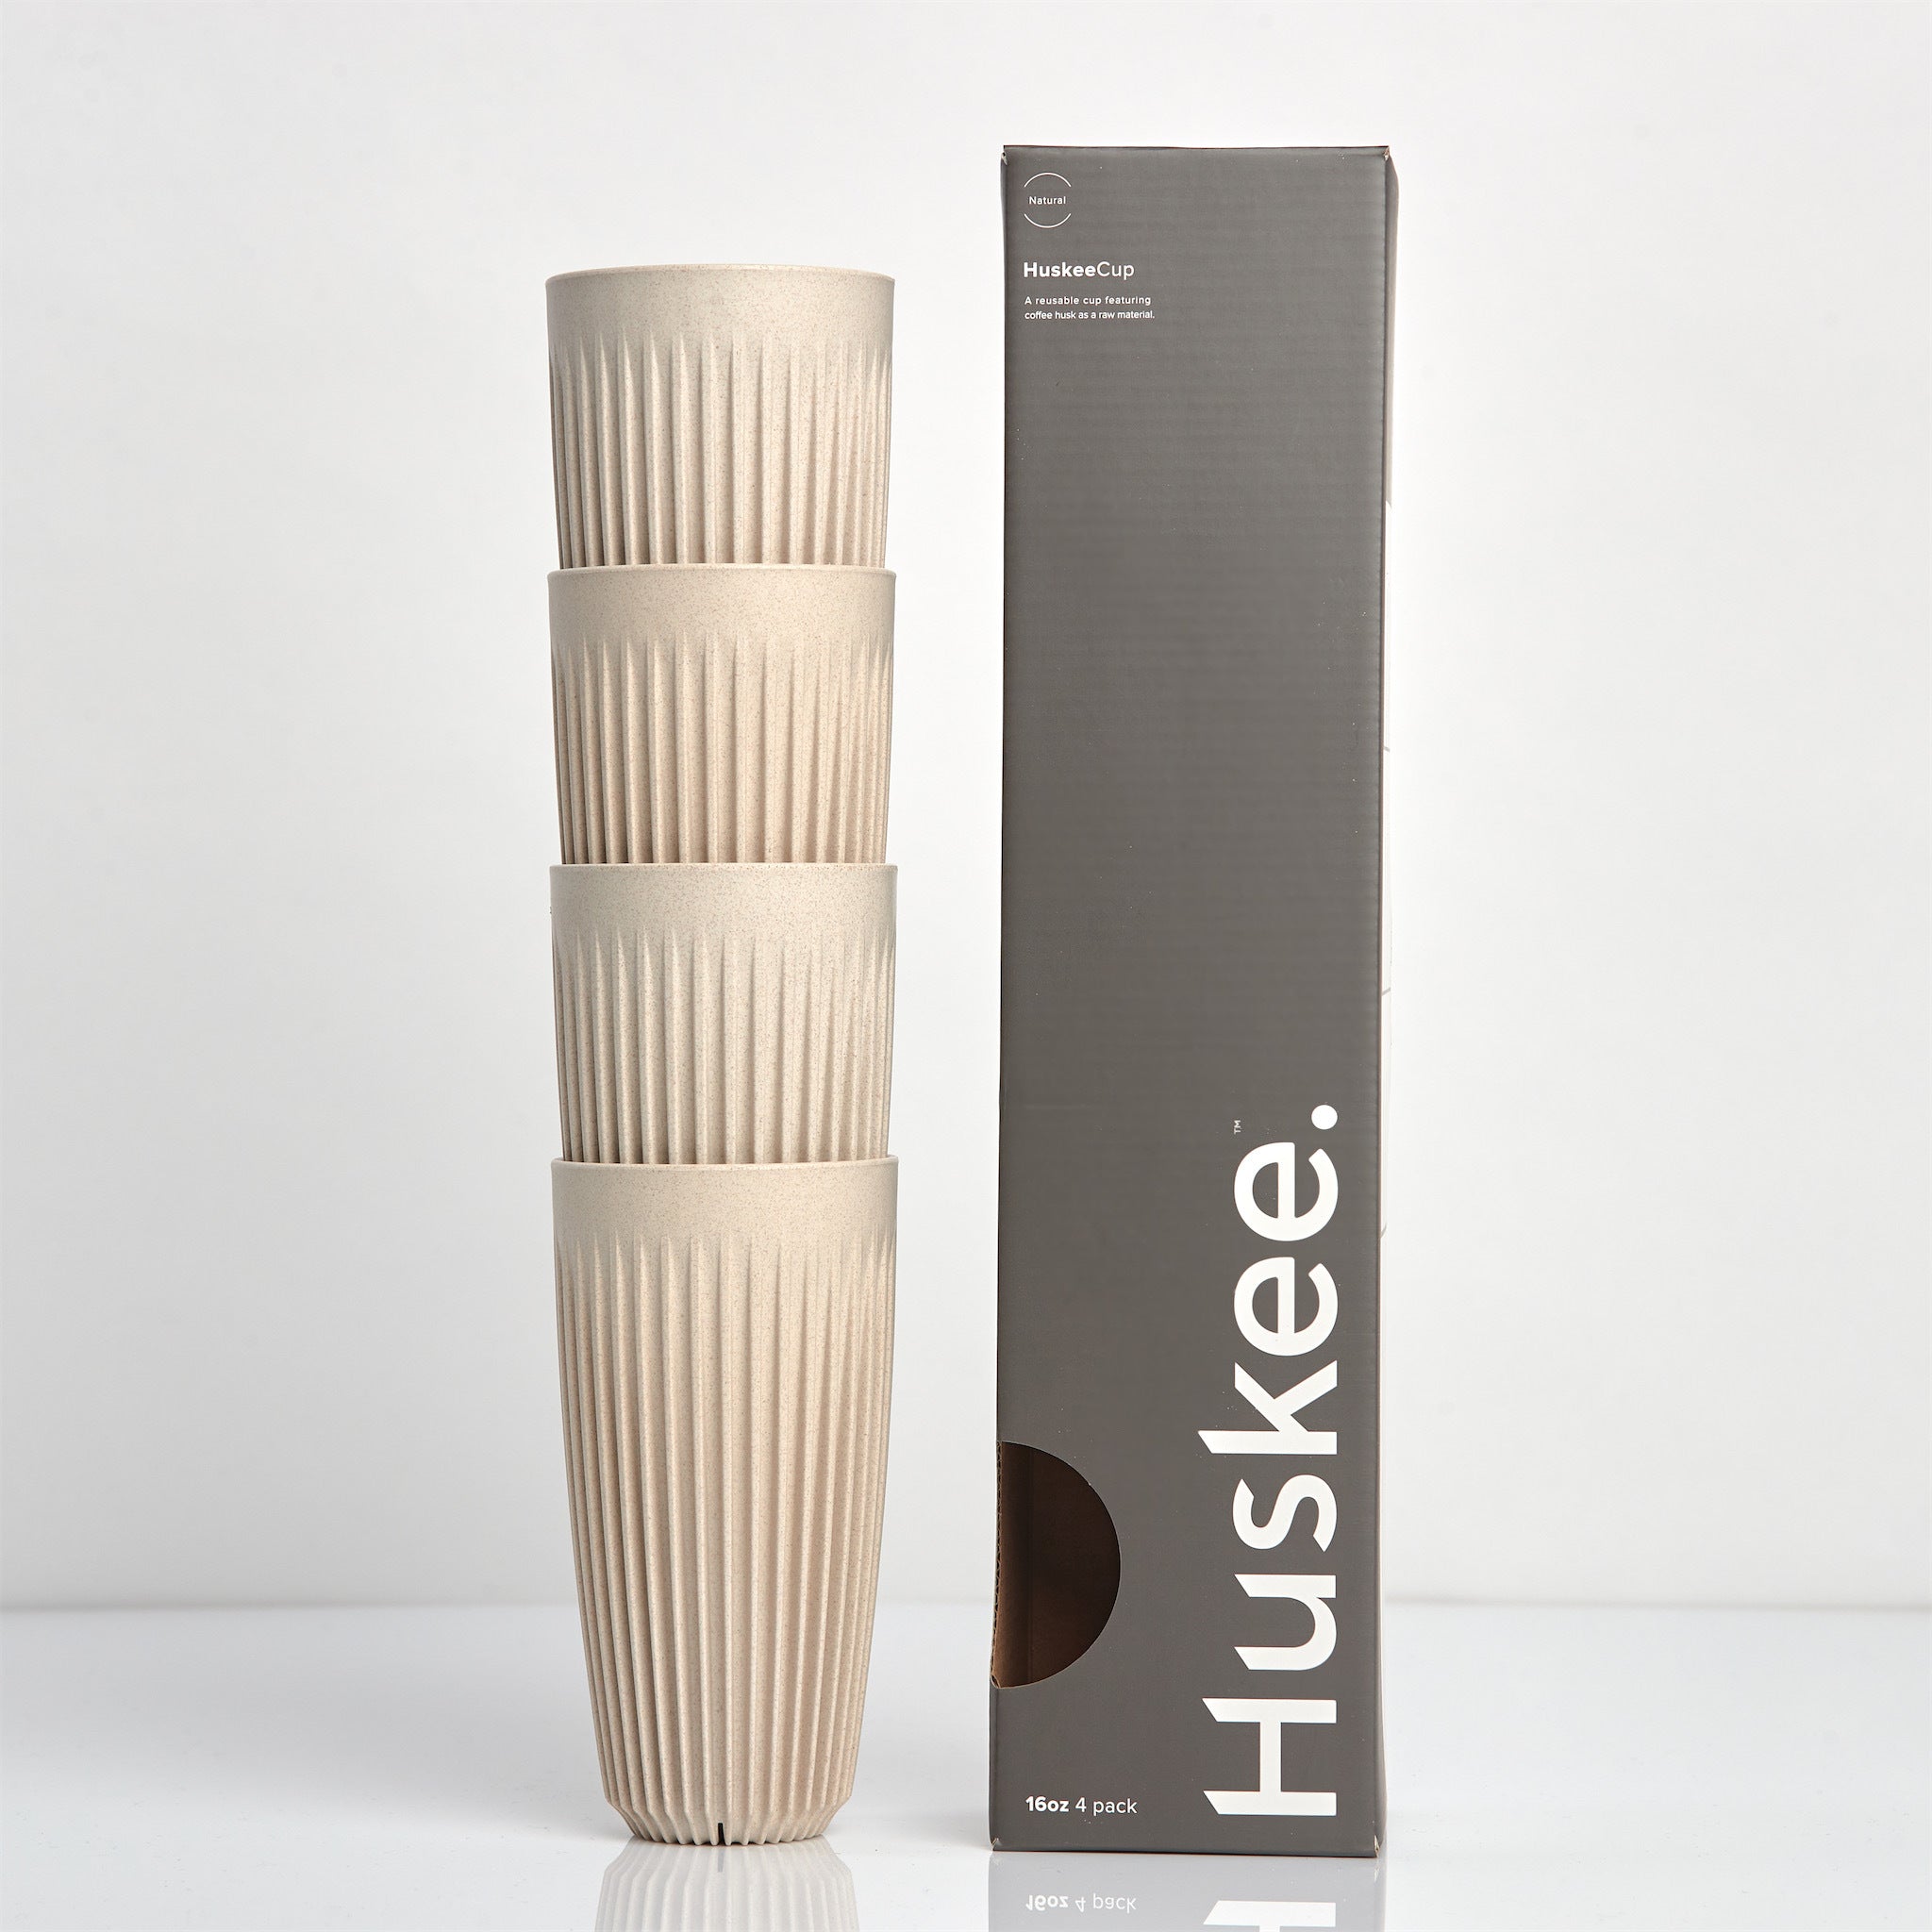 Huskee 咖啡杯 4 件装 [16 盎司/473 毫升]（木炭/自然色）